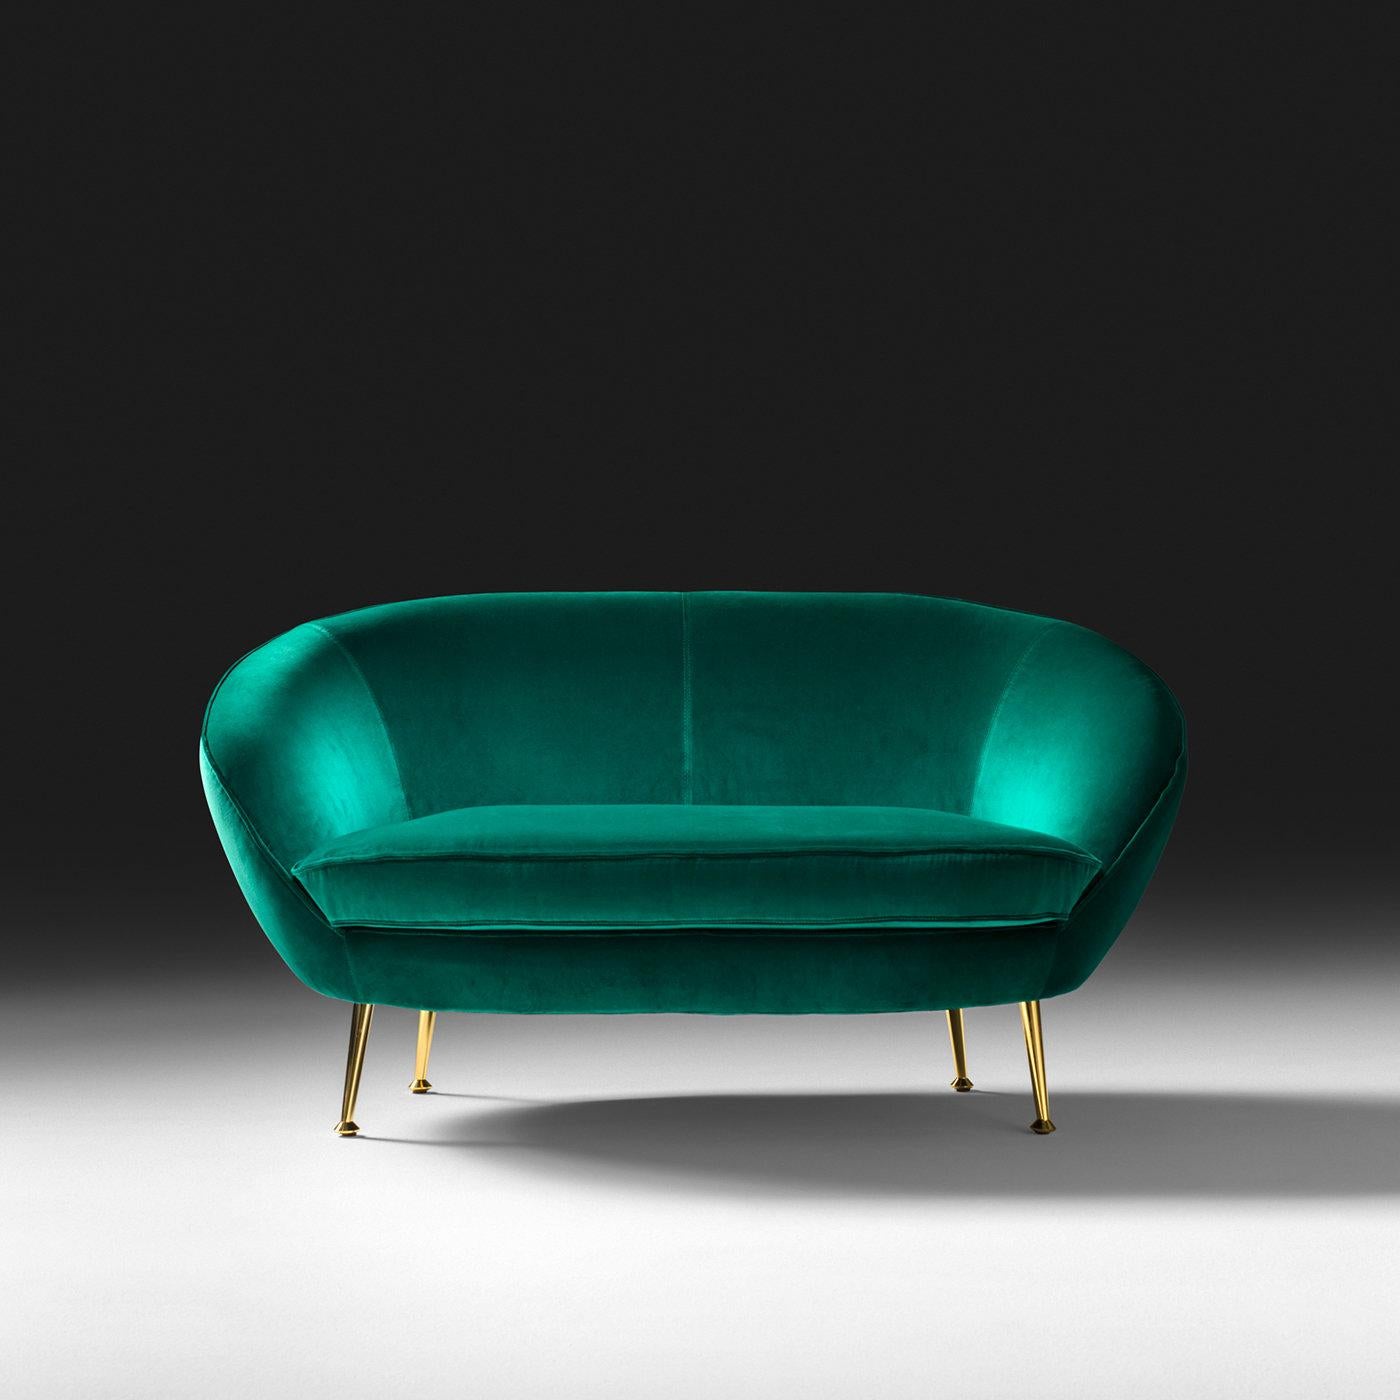 Dieses moderne Sofa besticht durch seine einzigartige, leuchtende Persönlichkeit, die sich in der smaragdgrünen Polsterung und dem unglaublichen Design widerspiegelt. Er besteht aus einer Buchenholzstruktur mit einem feuerfesten